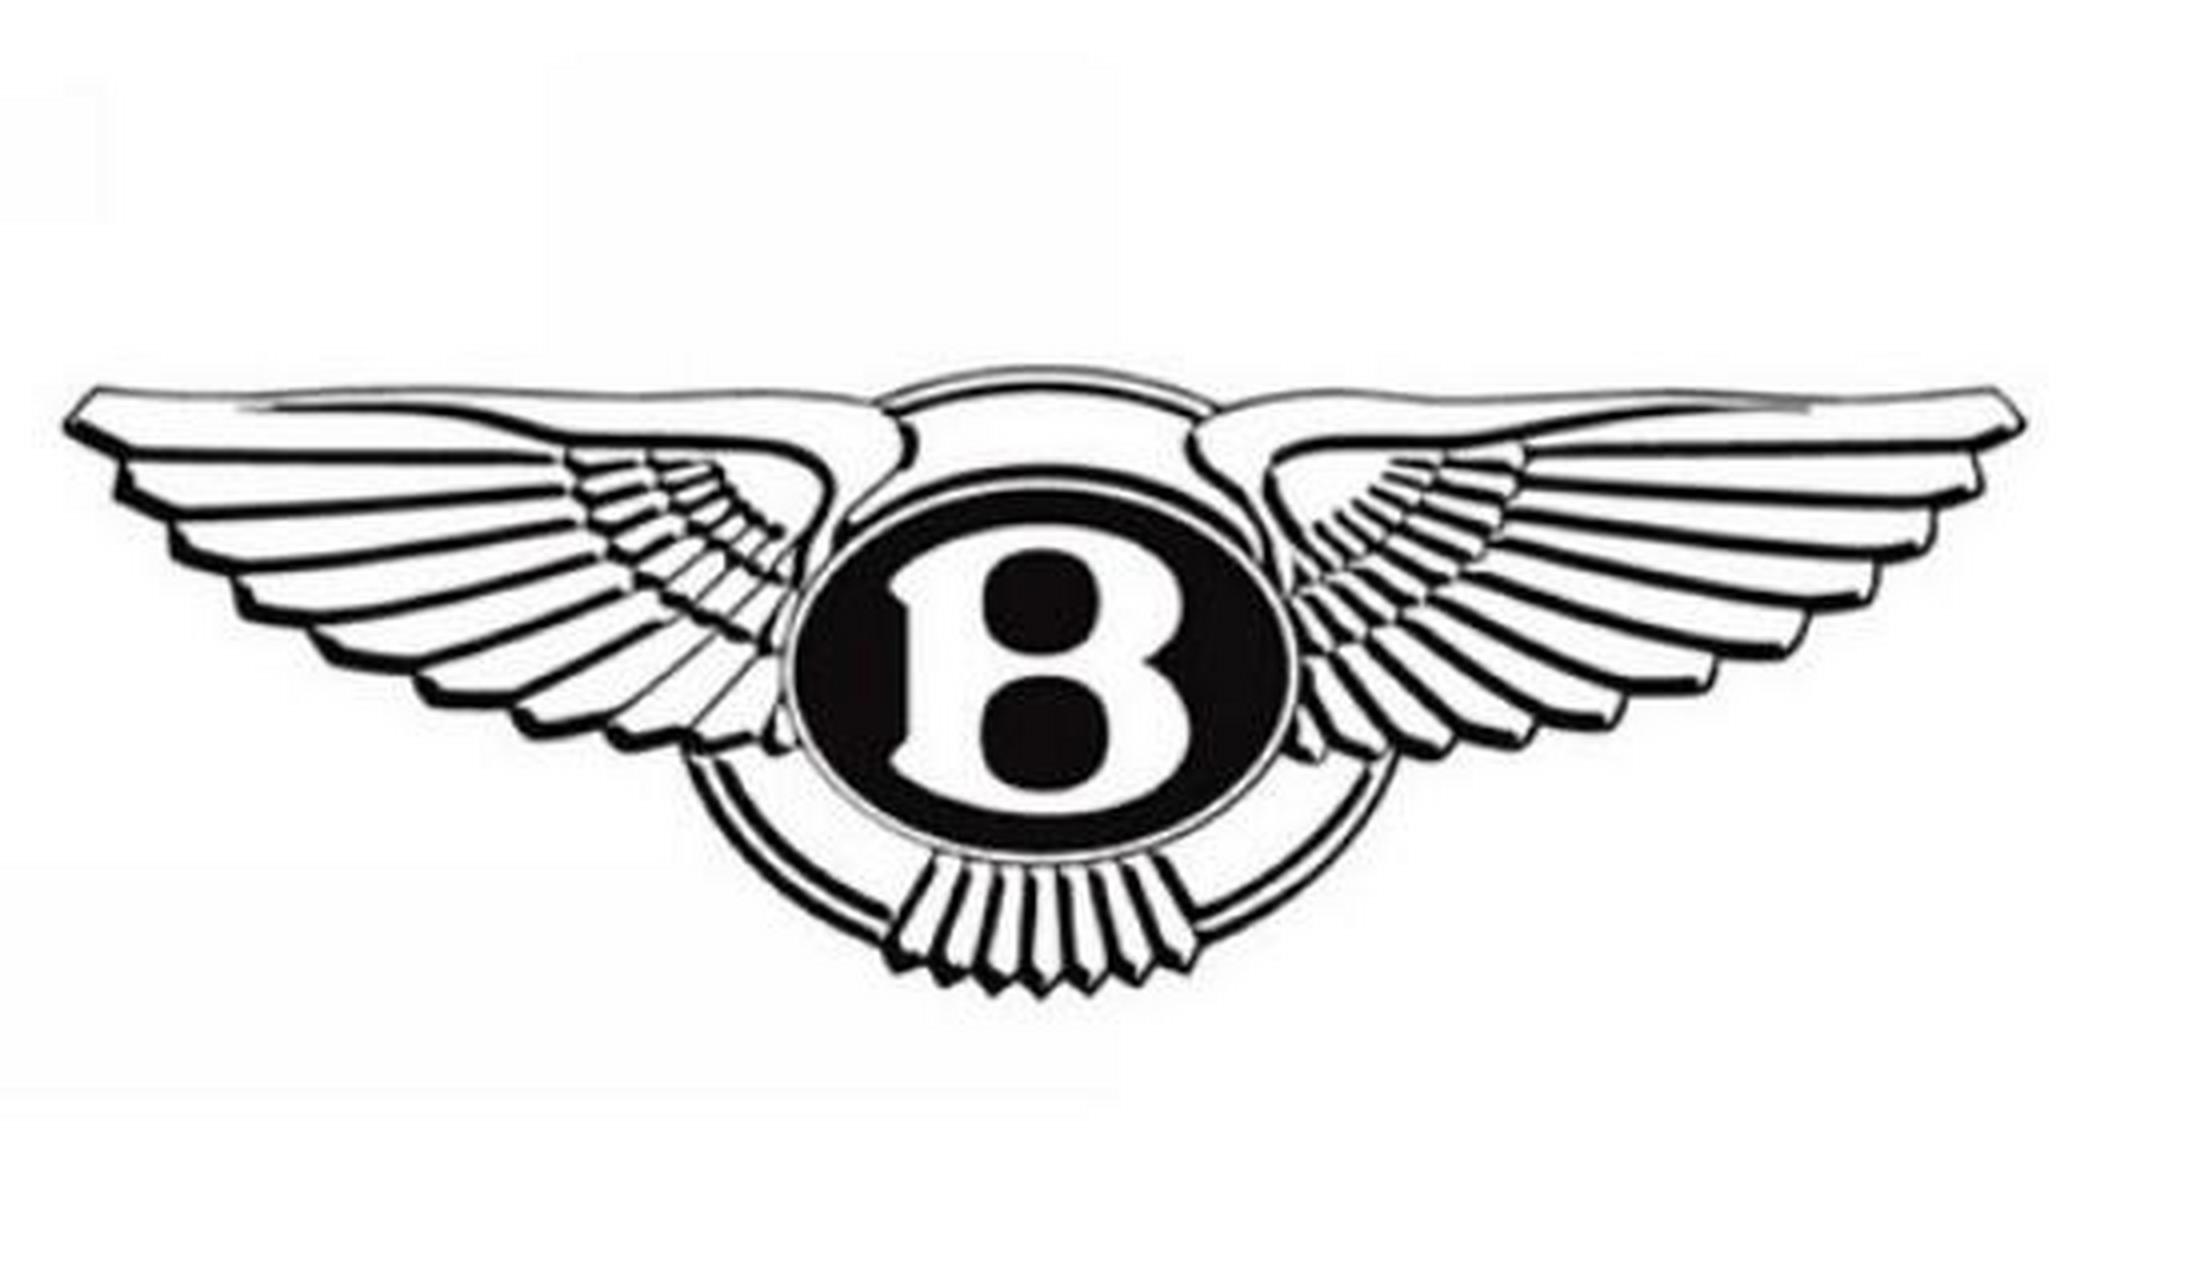 宾利汽车是世界上著名的汽车品牌之一,它的车标是一对飞翔的翅膀,恰似